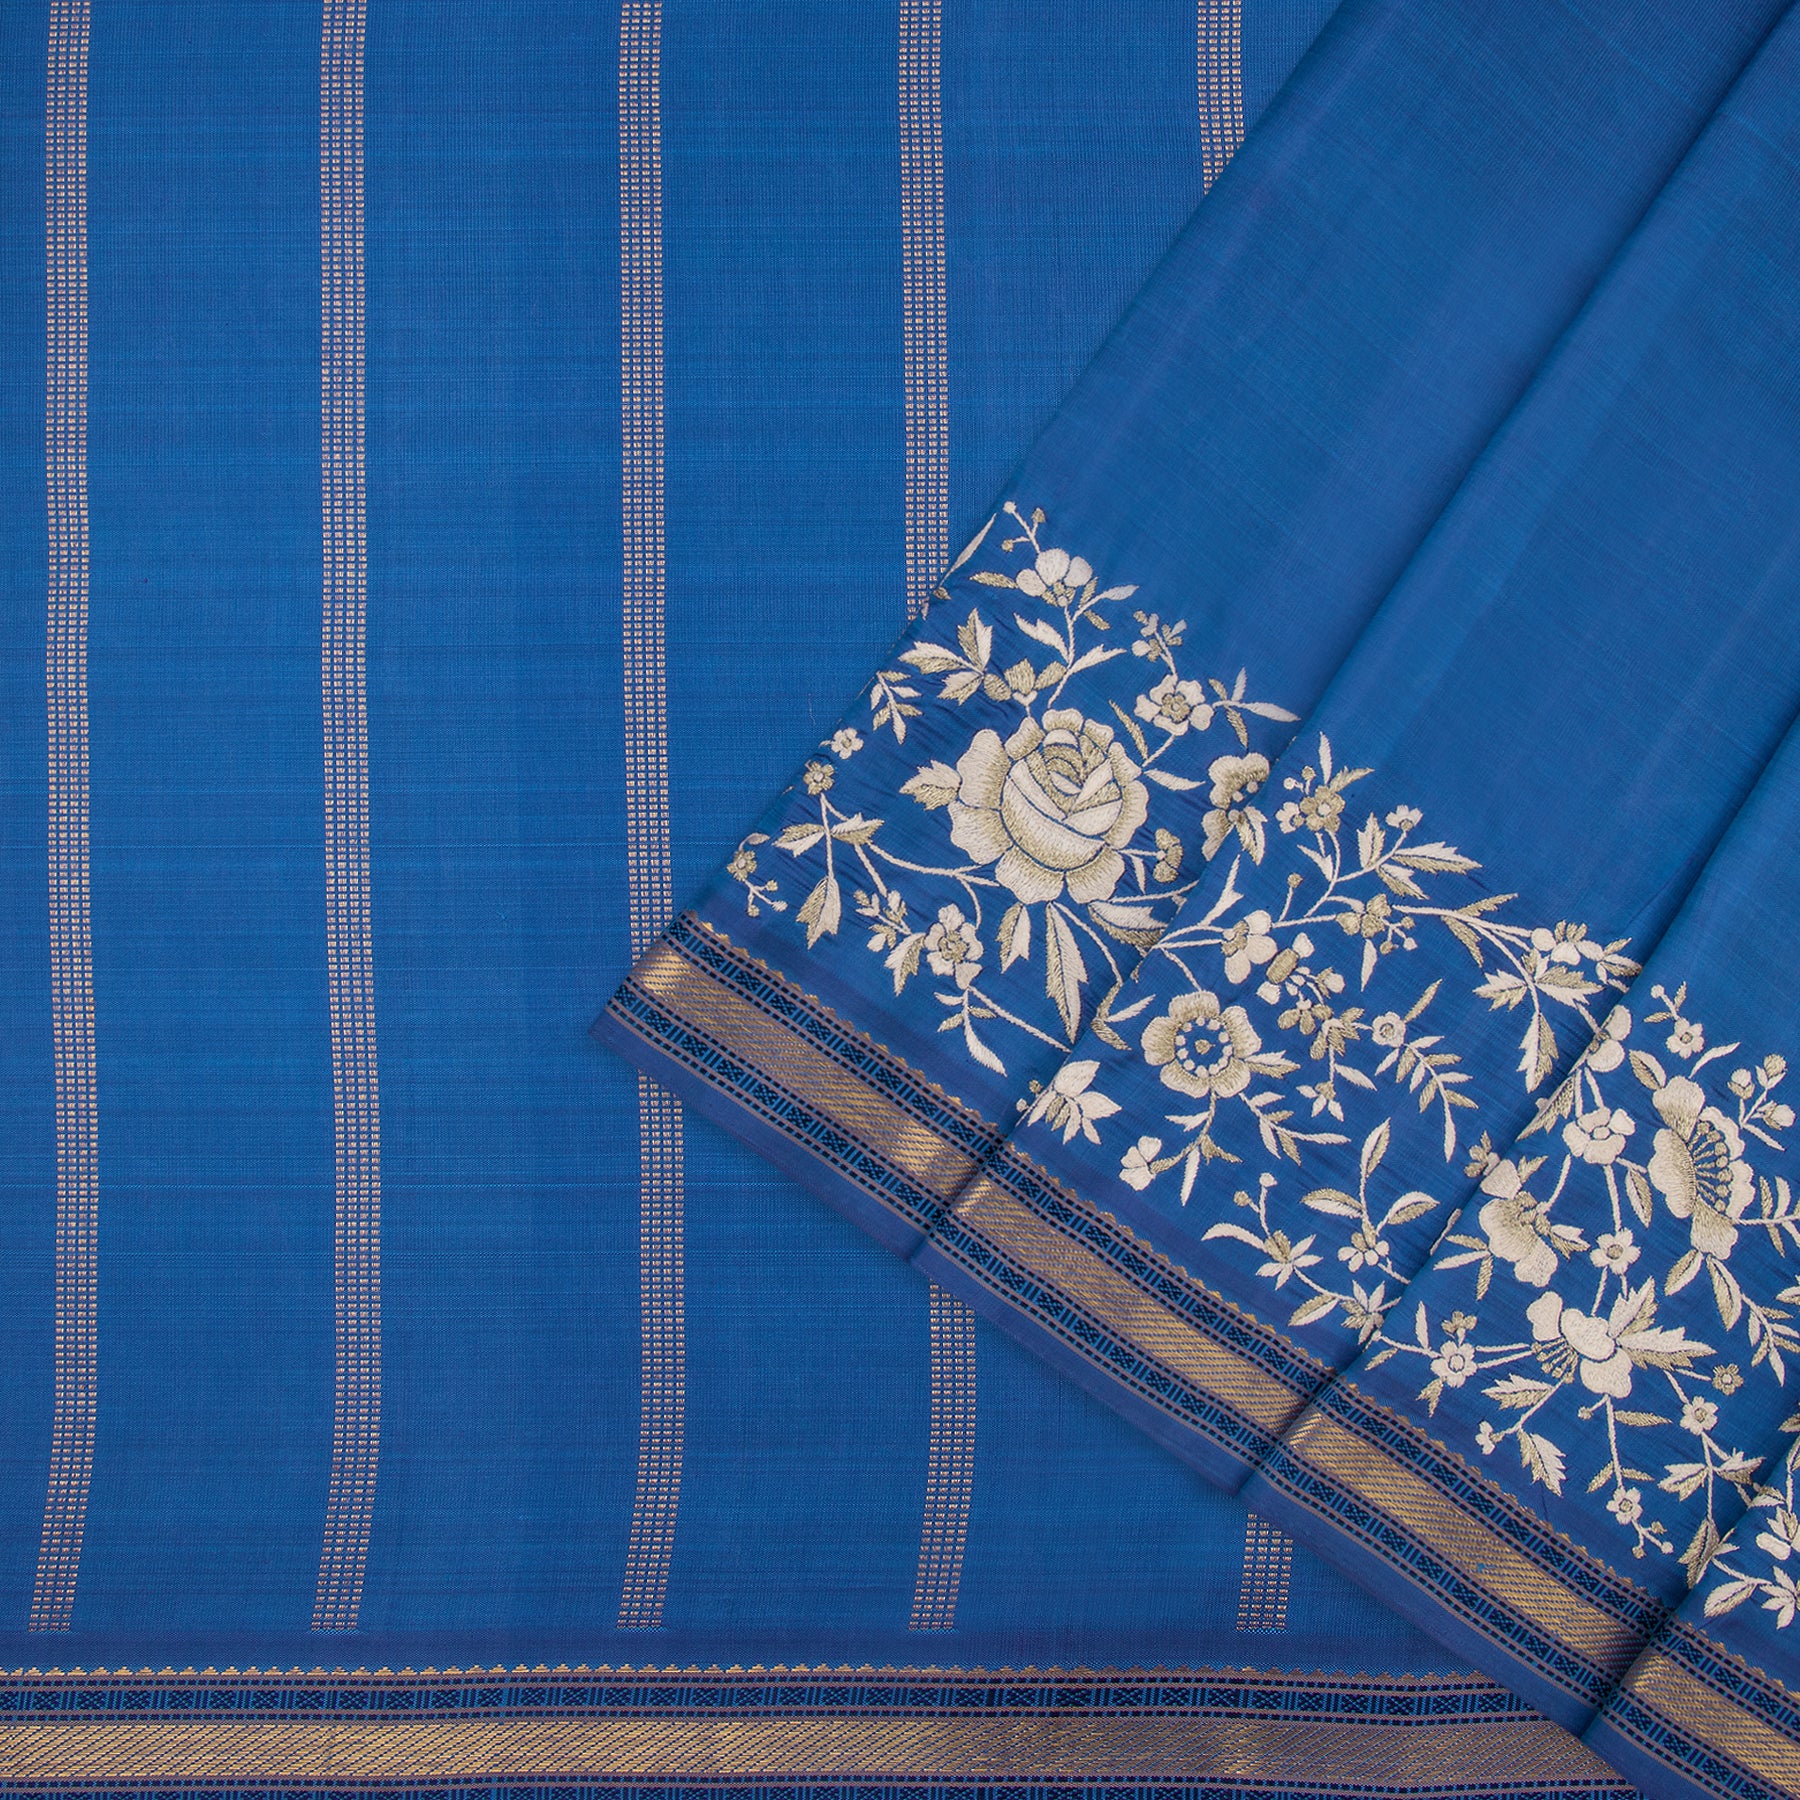 Kanakavalli X Ashdeen Kanjivaram Silk Sari 21-040-HS001-01980 - Cover View